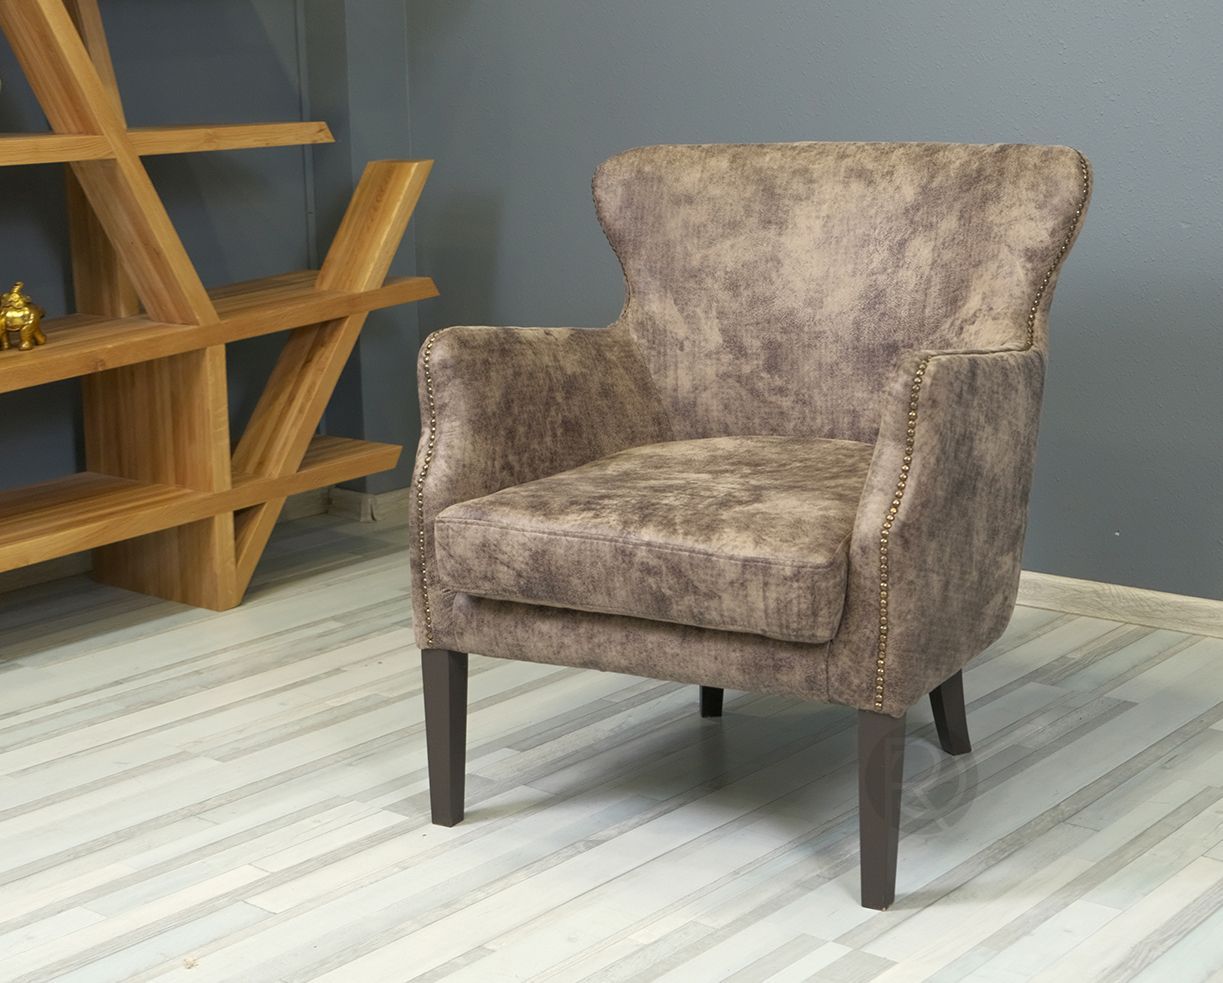 STEAMPUNK chair by Romatti